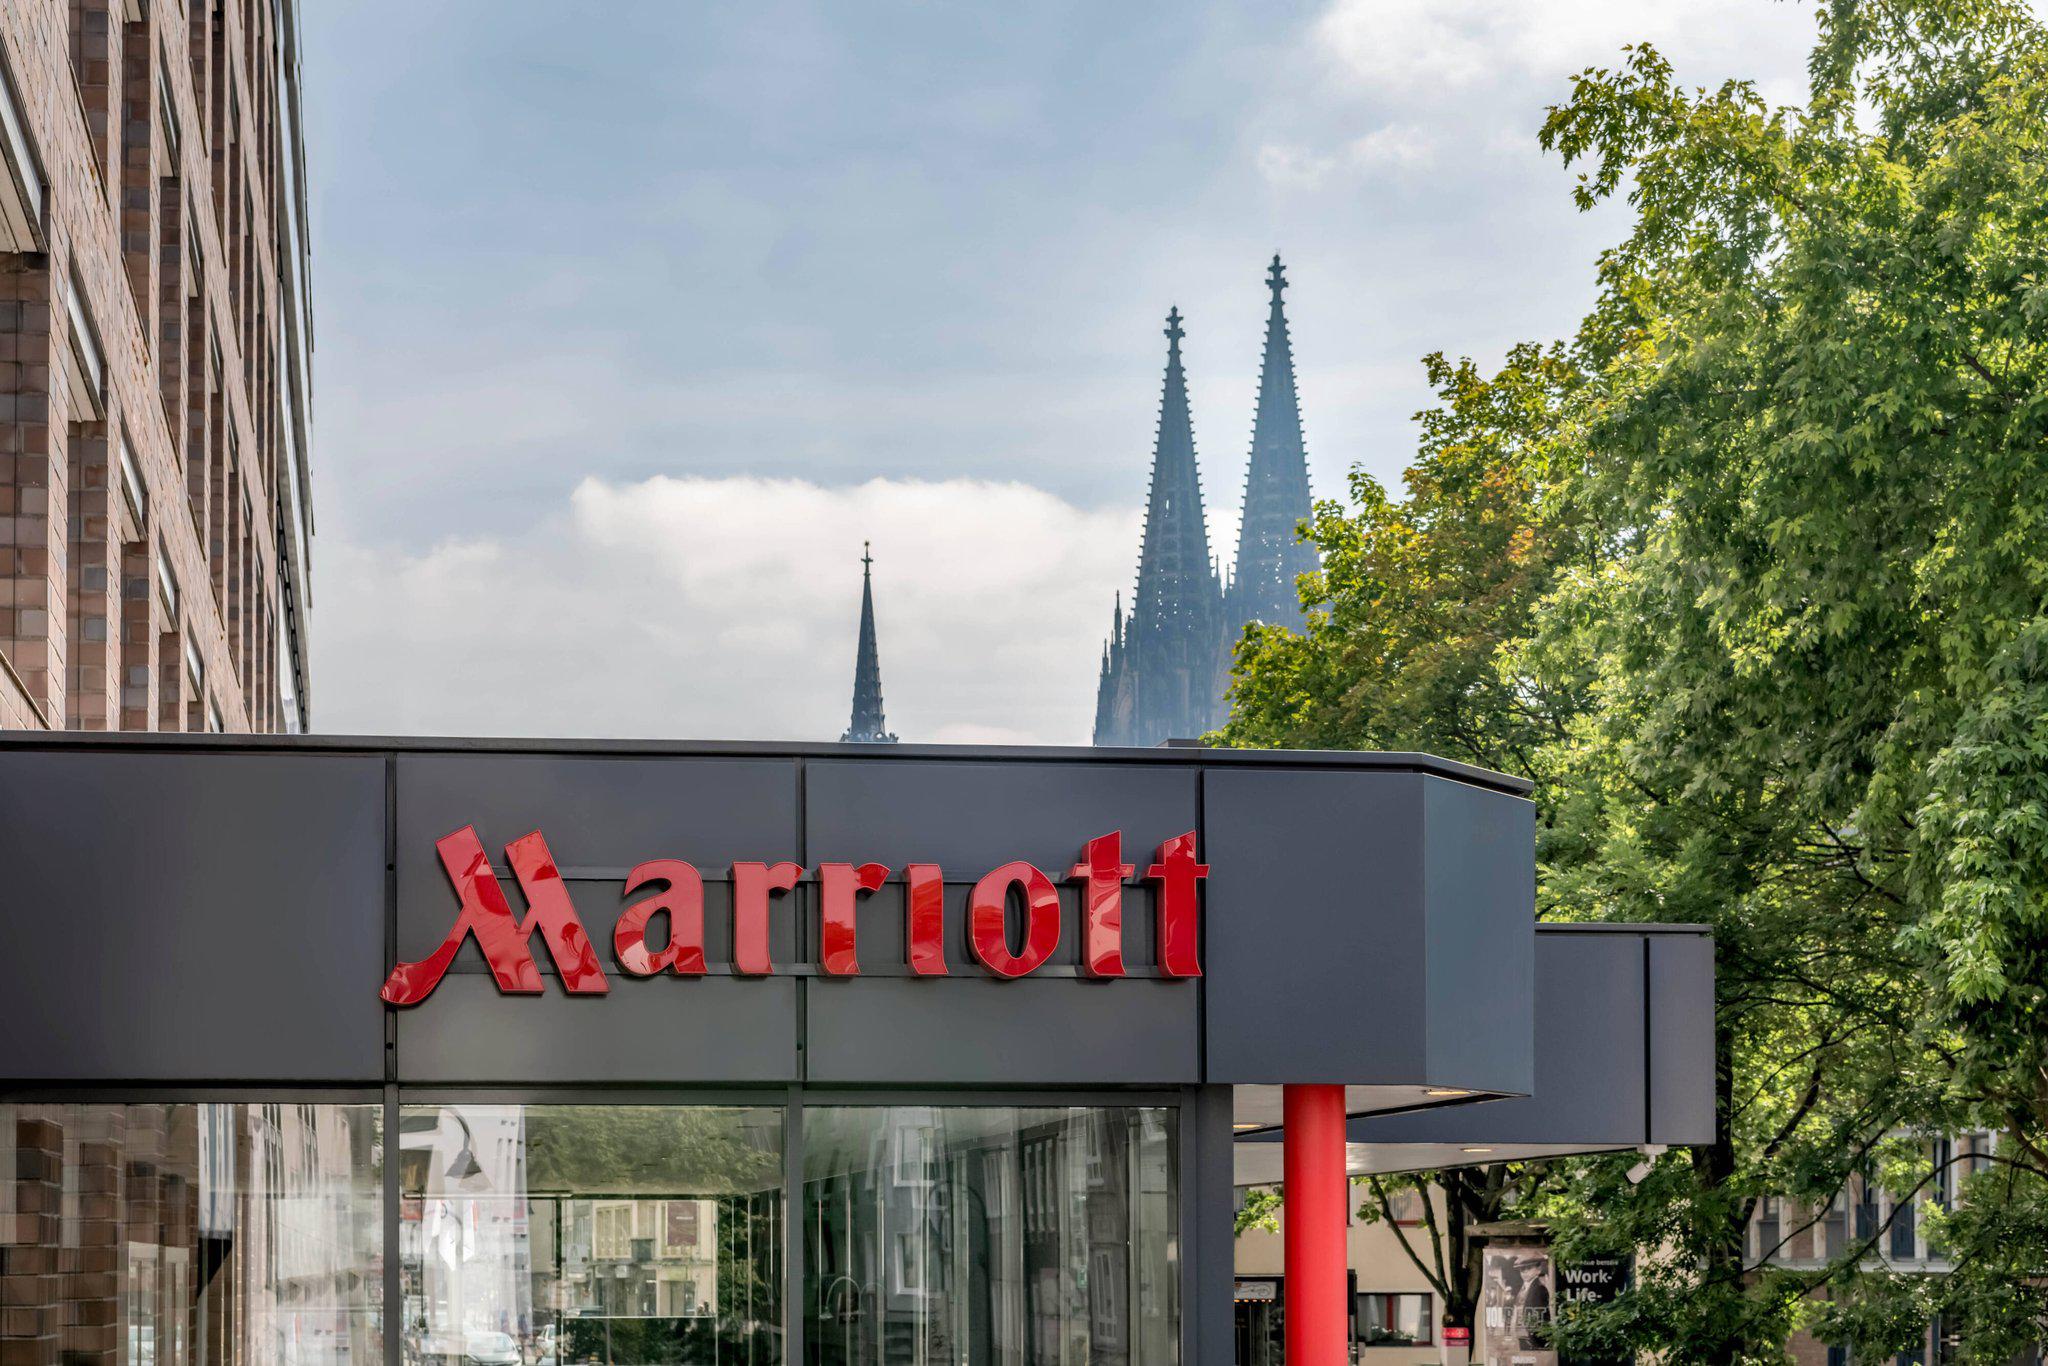 Cologne Marriott Hotel, Johannisstrasse 76-80 in Cologne